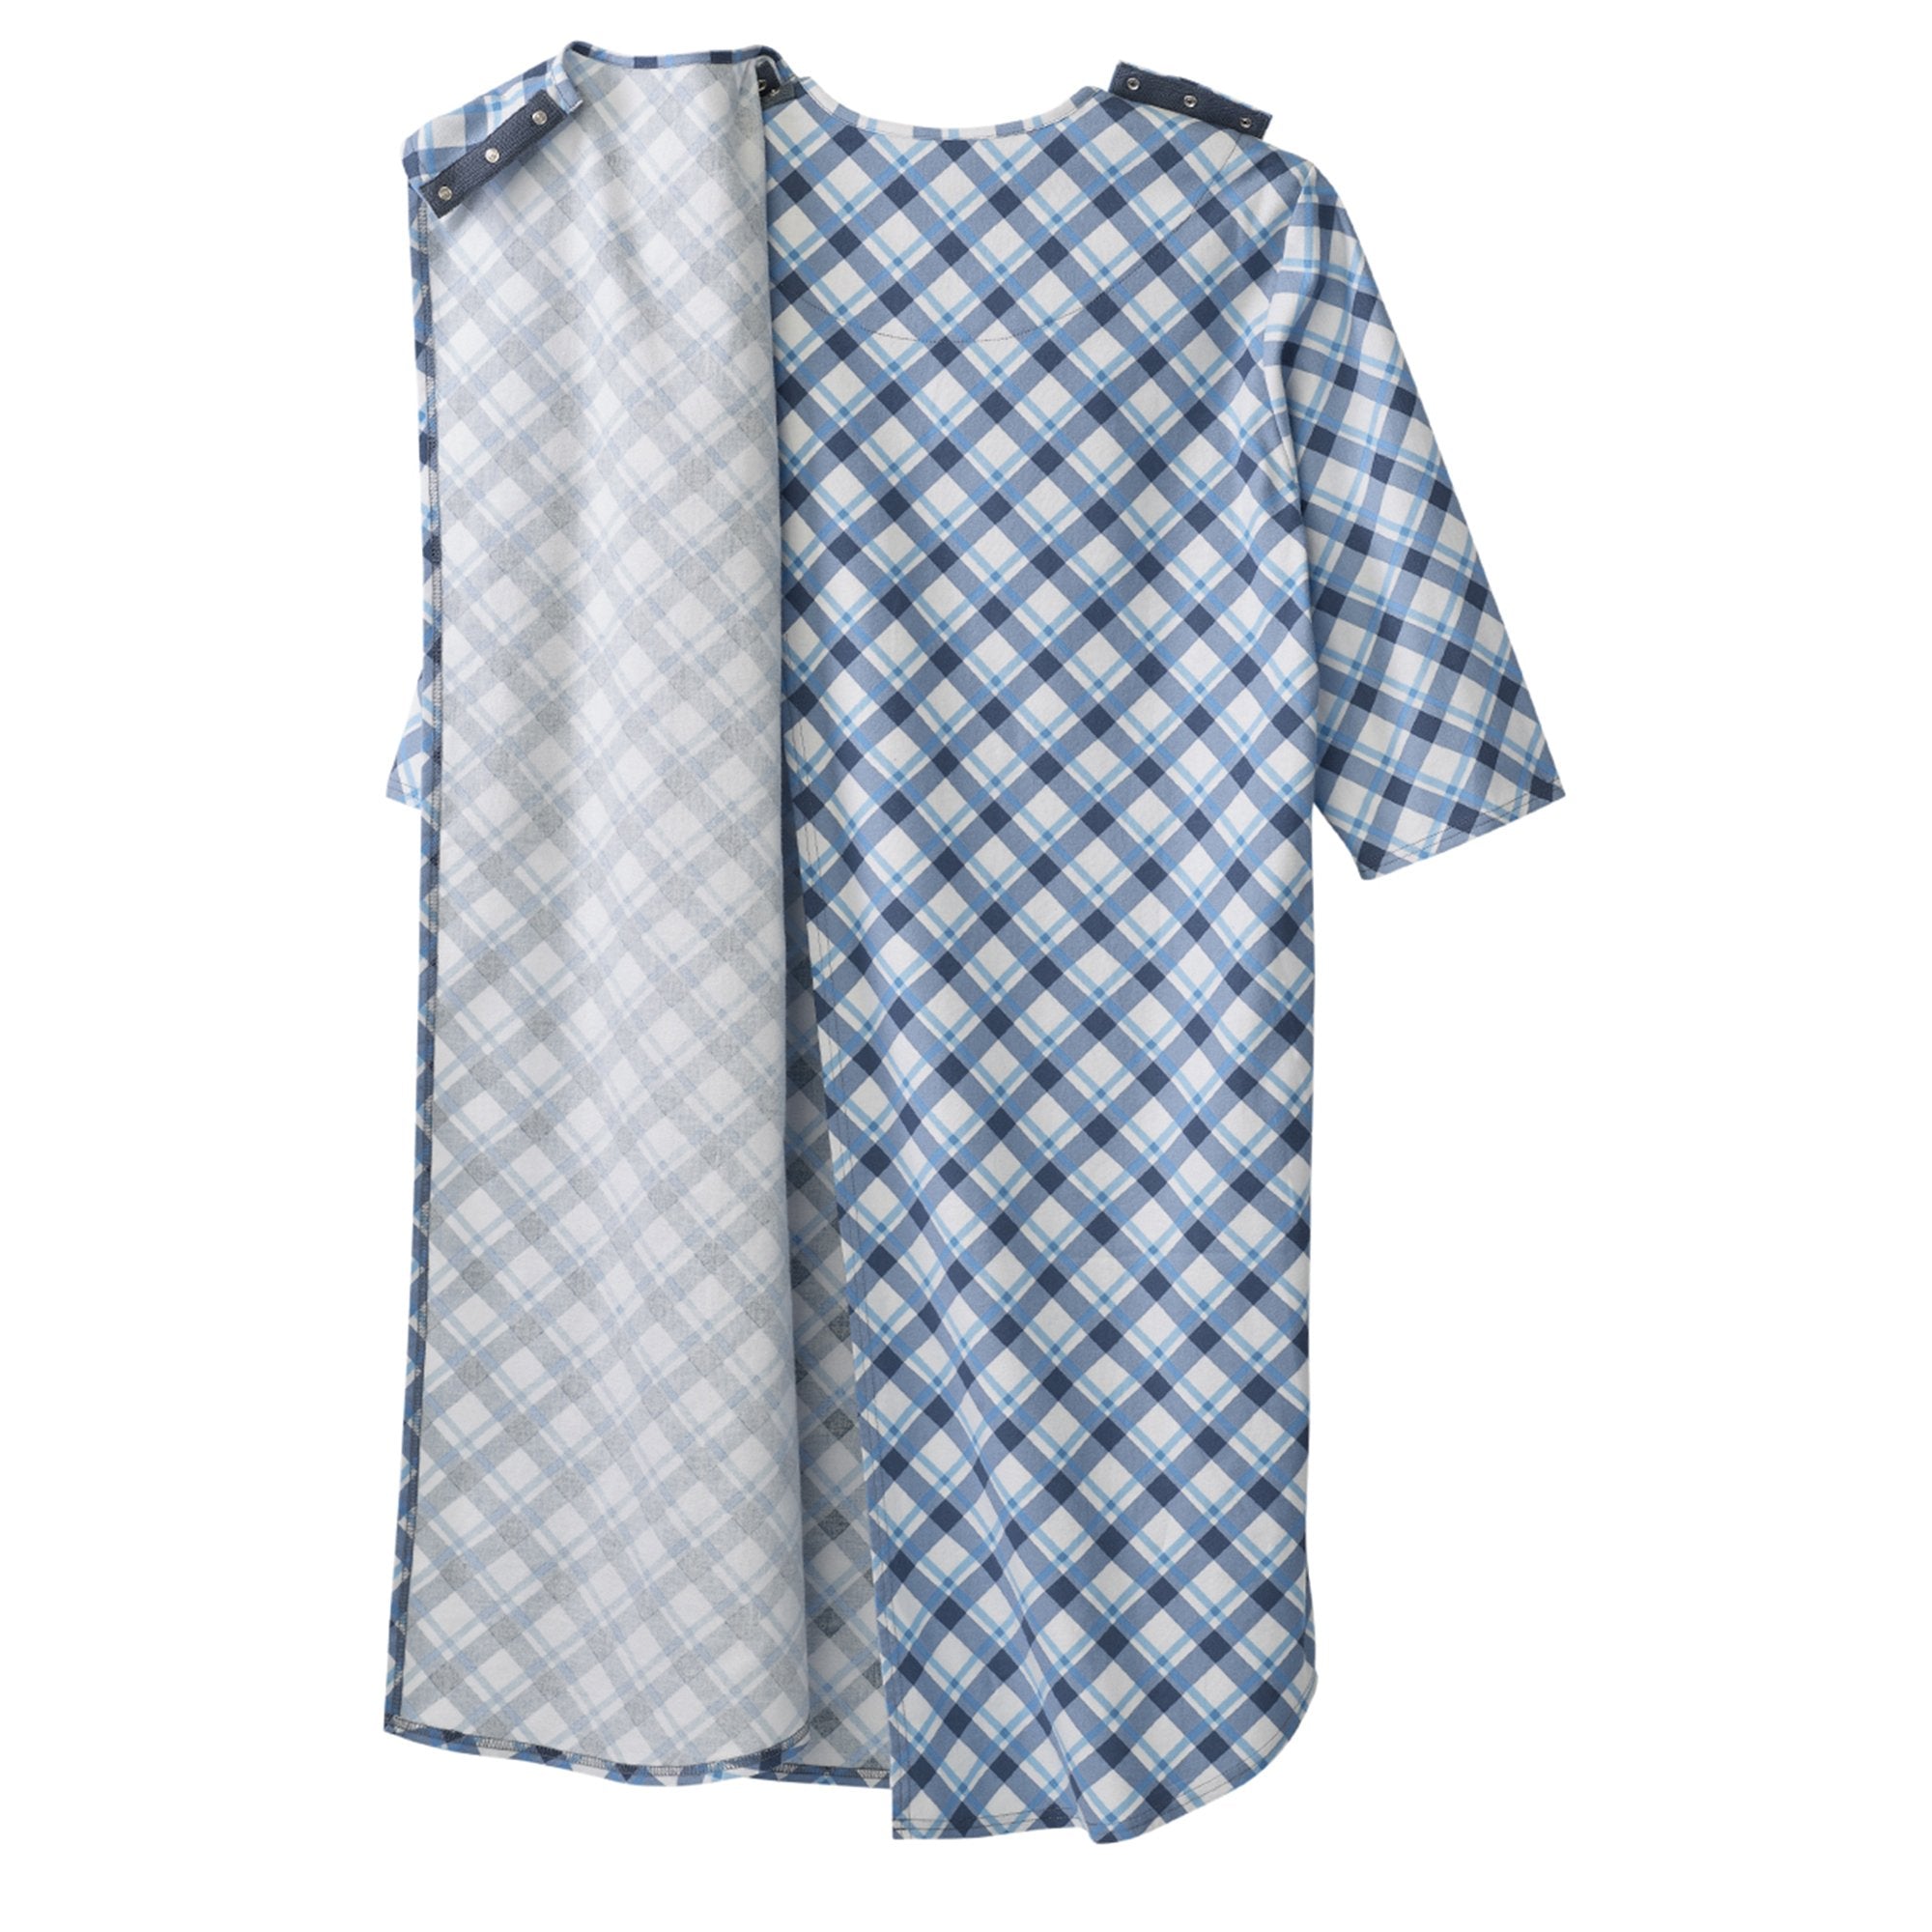 Silverts® Shoulder Snap Patient Exam Gown, Large, Diagonal Blue Plaid (1 Unit)